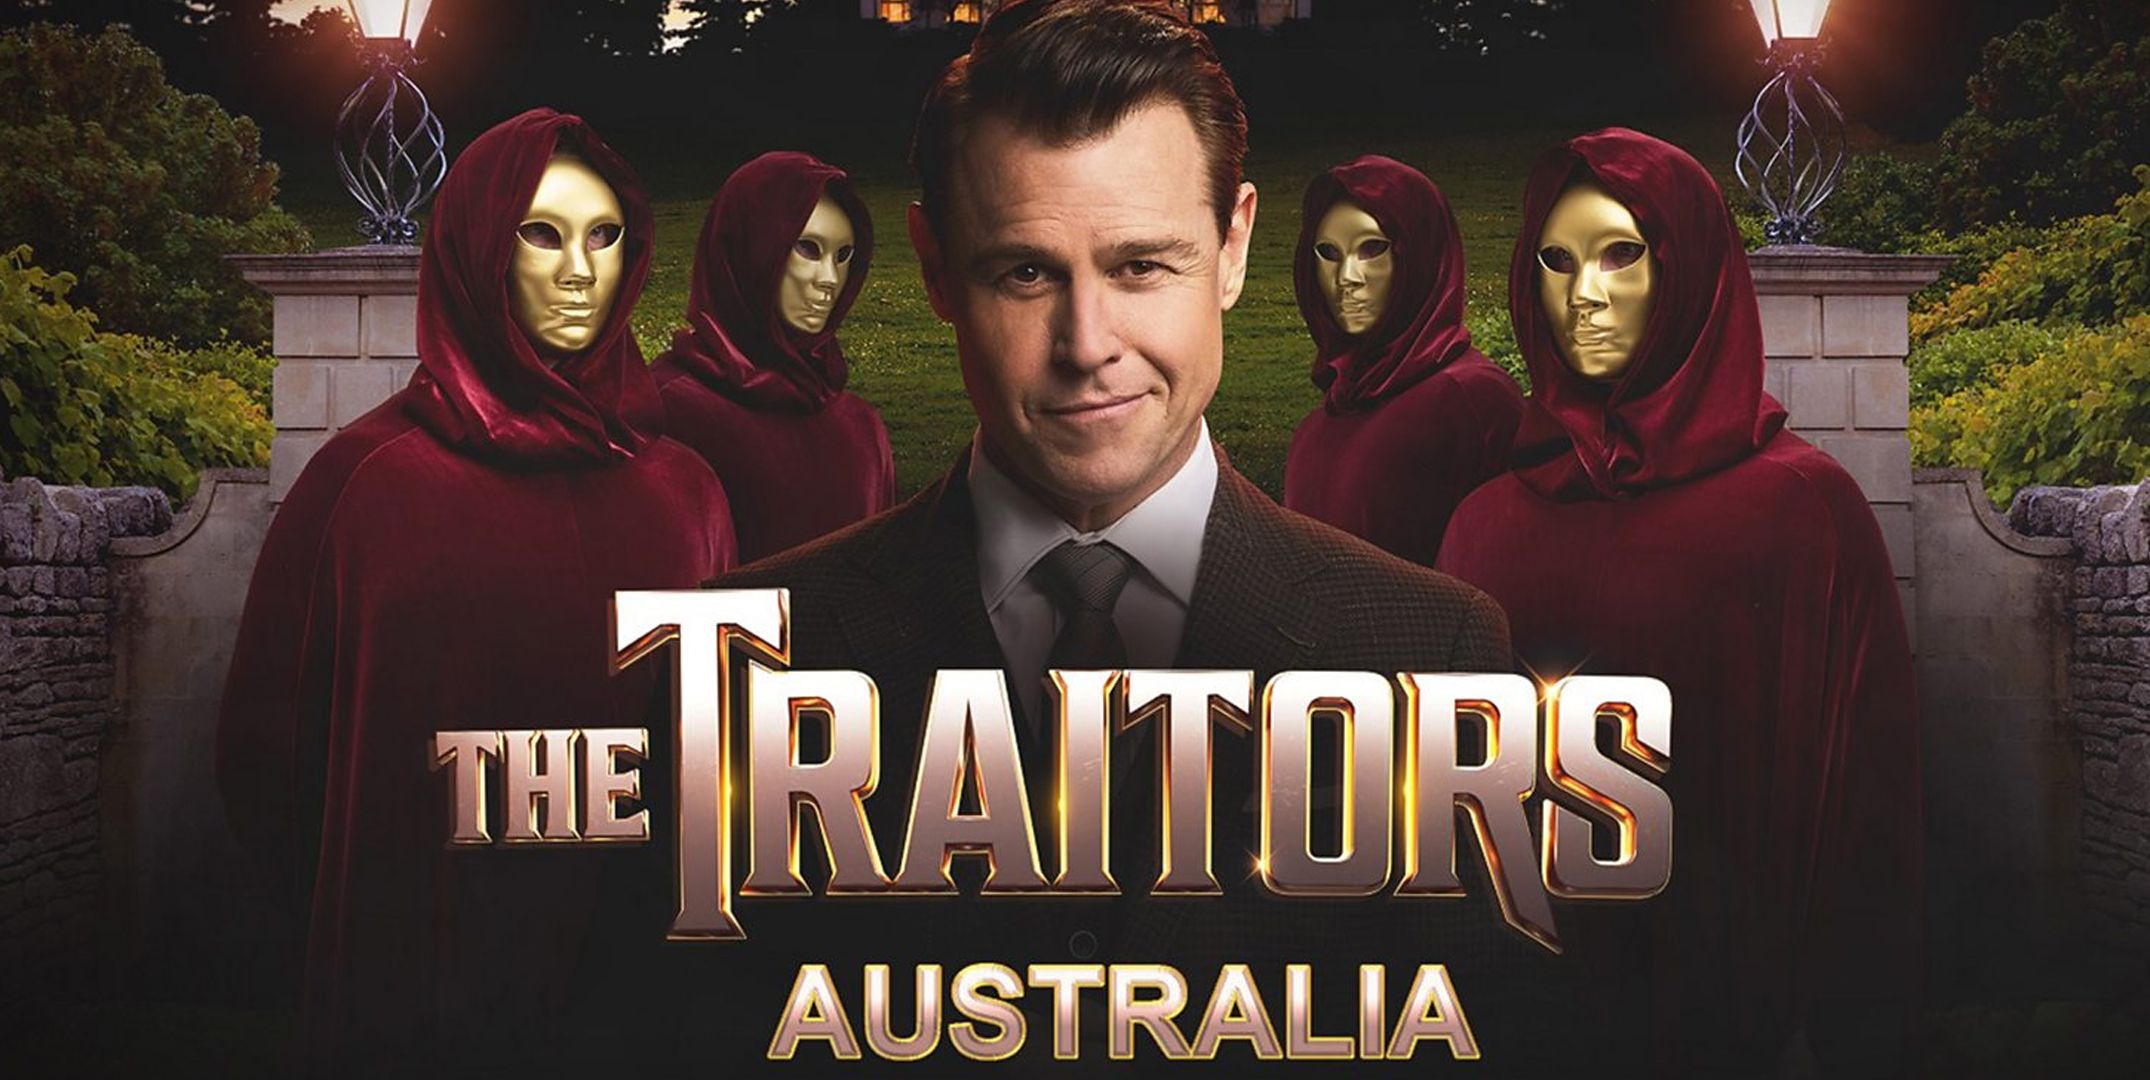 The Traitors Australia